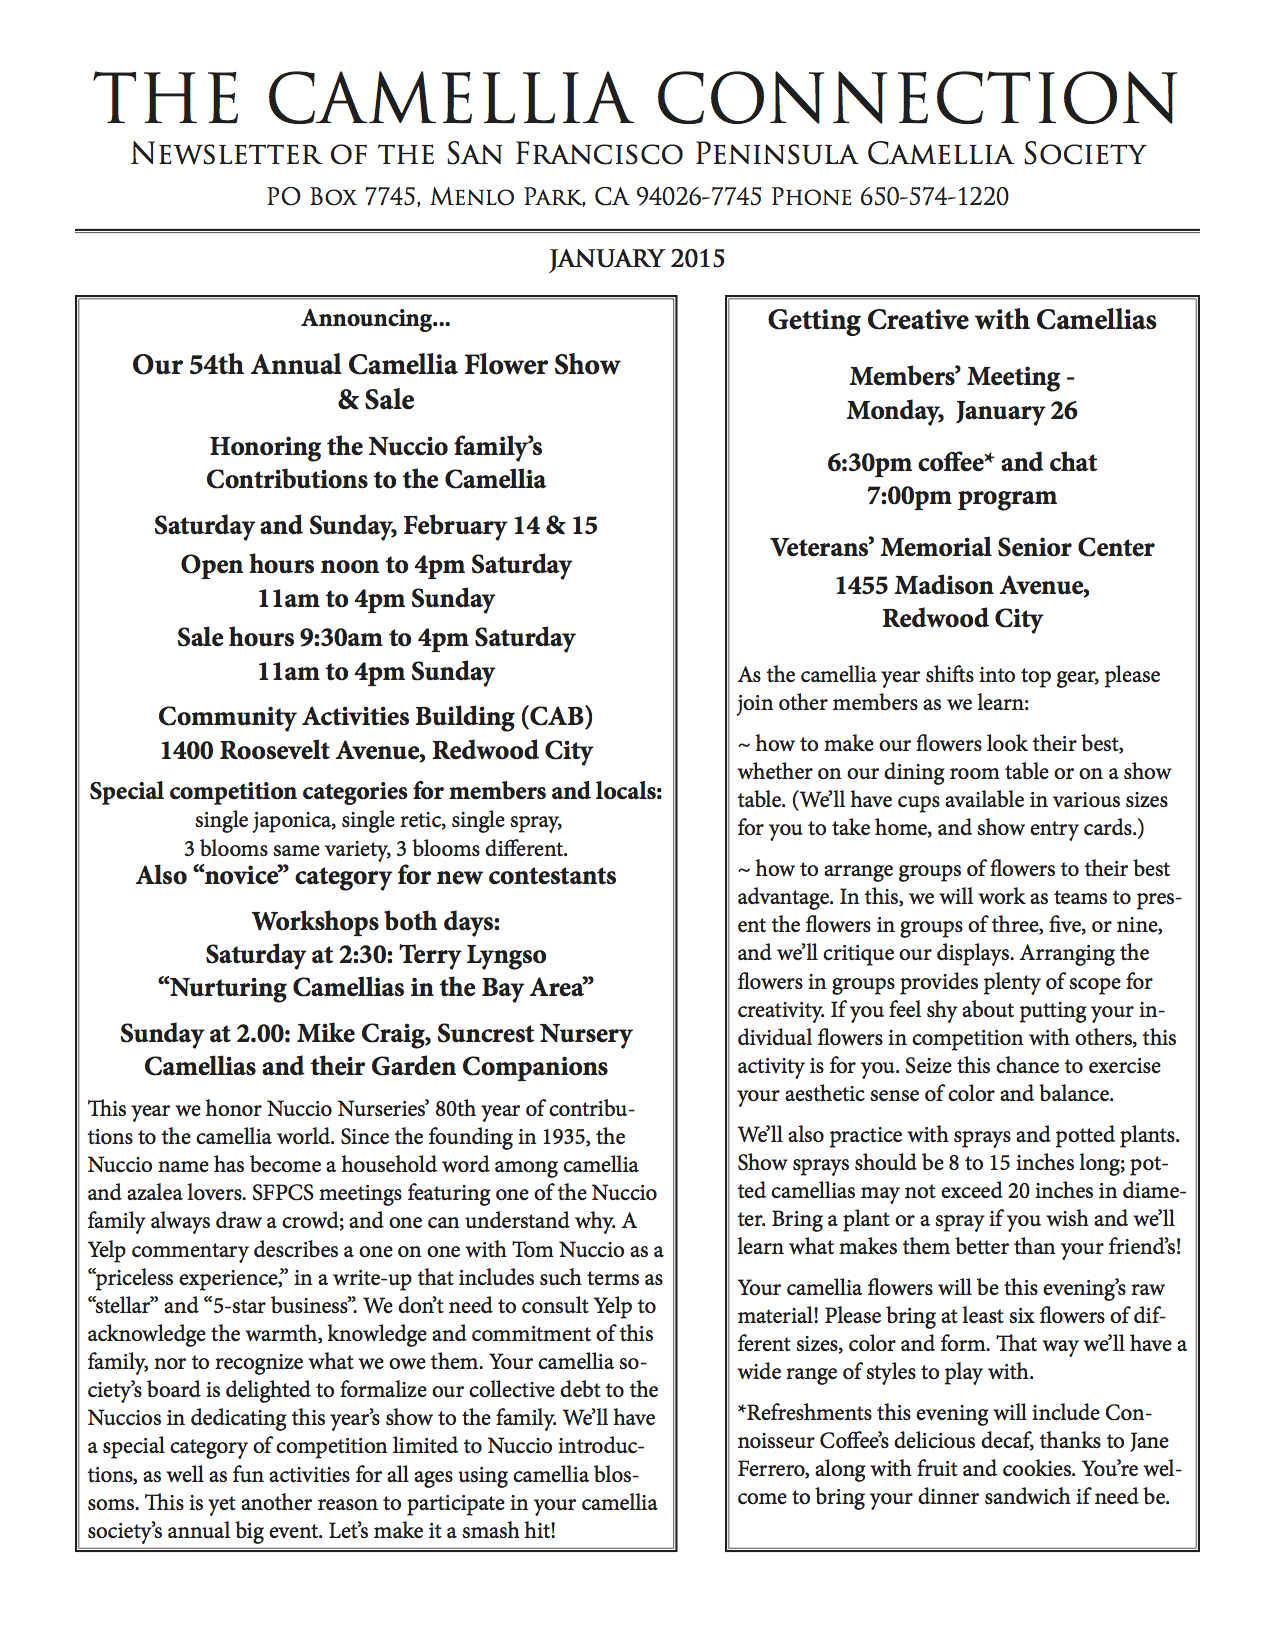 January 2015 newsletter p1